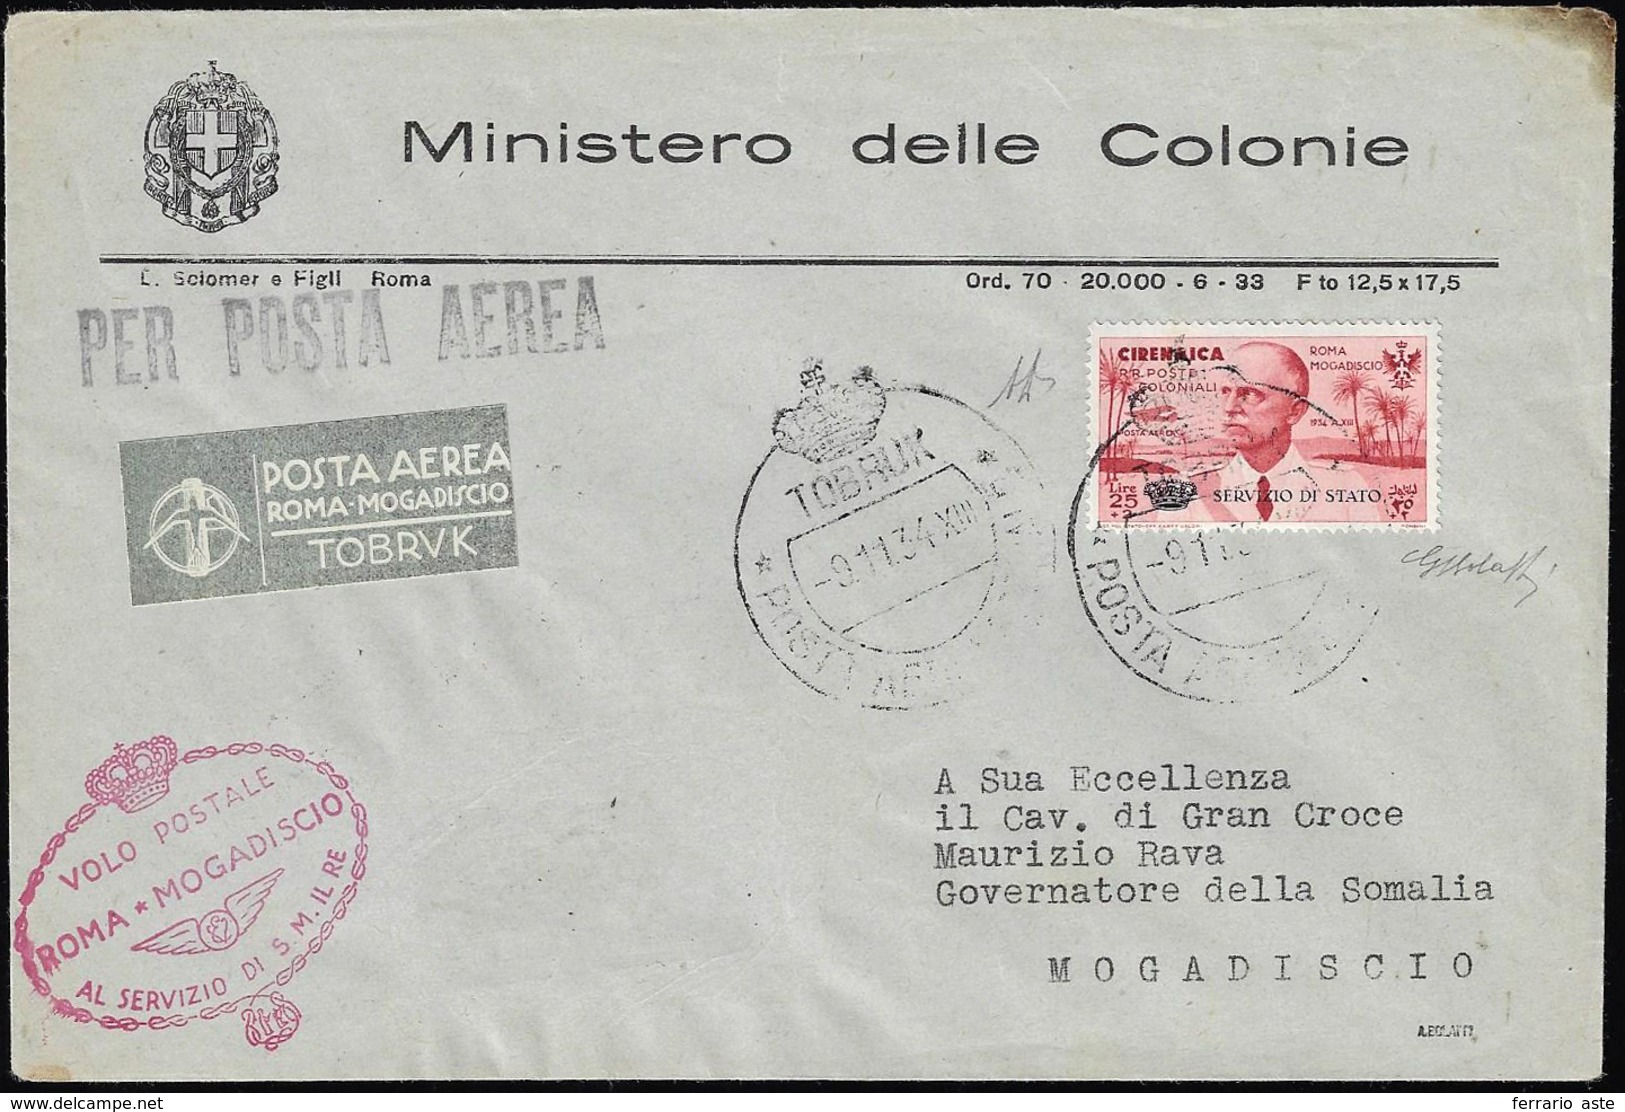 SERVIZIO AEREO 1934 - 25 + 2 Lire Coroncina (1), Perfetto, Su Aerogramma, Con I Timbri Postumi Come ... - Cirenaica